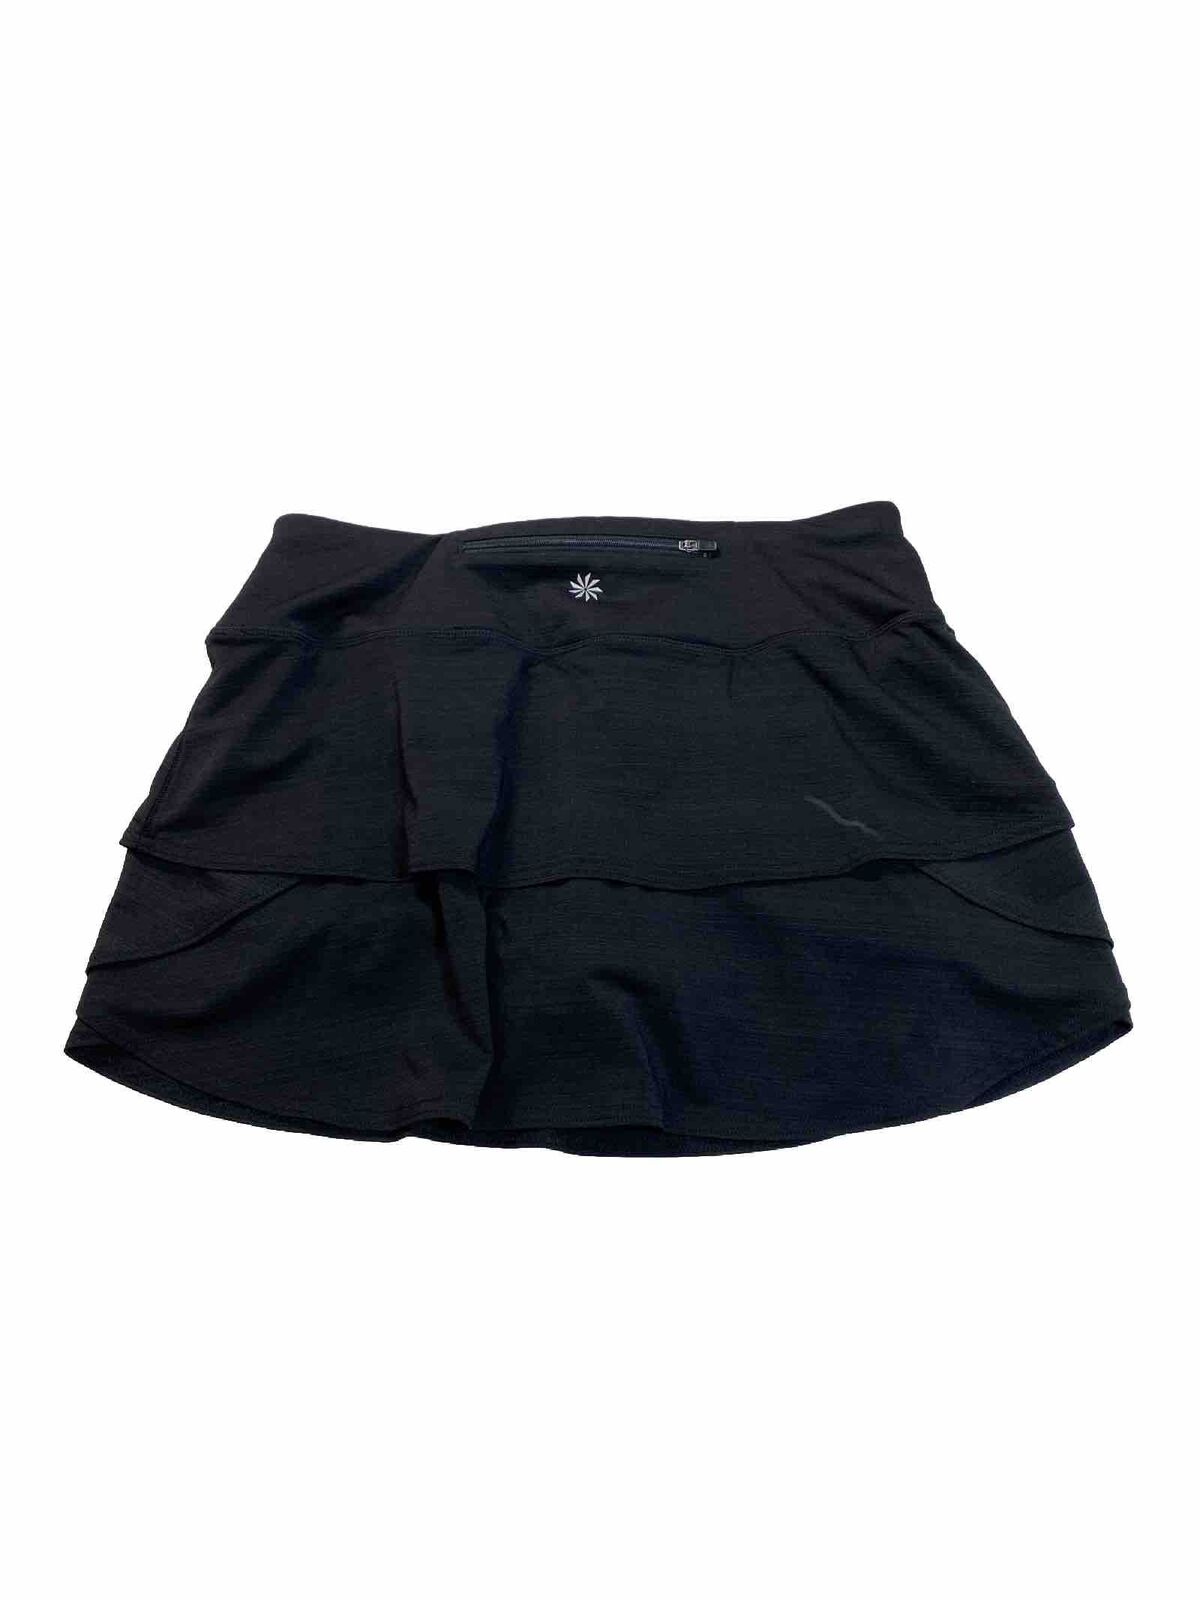 Athleta Women's Black Stripe Swagger Lined Athletic Skort Skirt - S